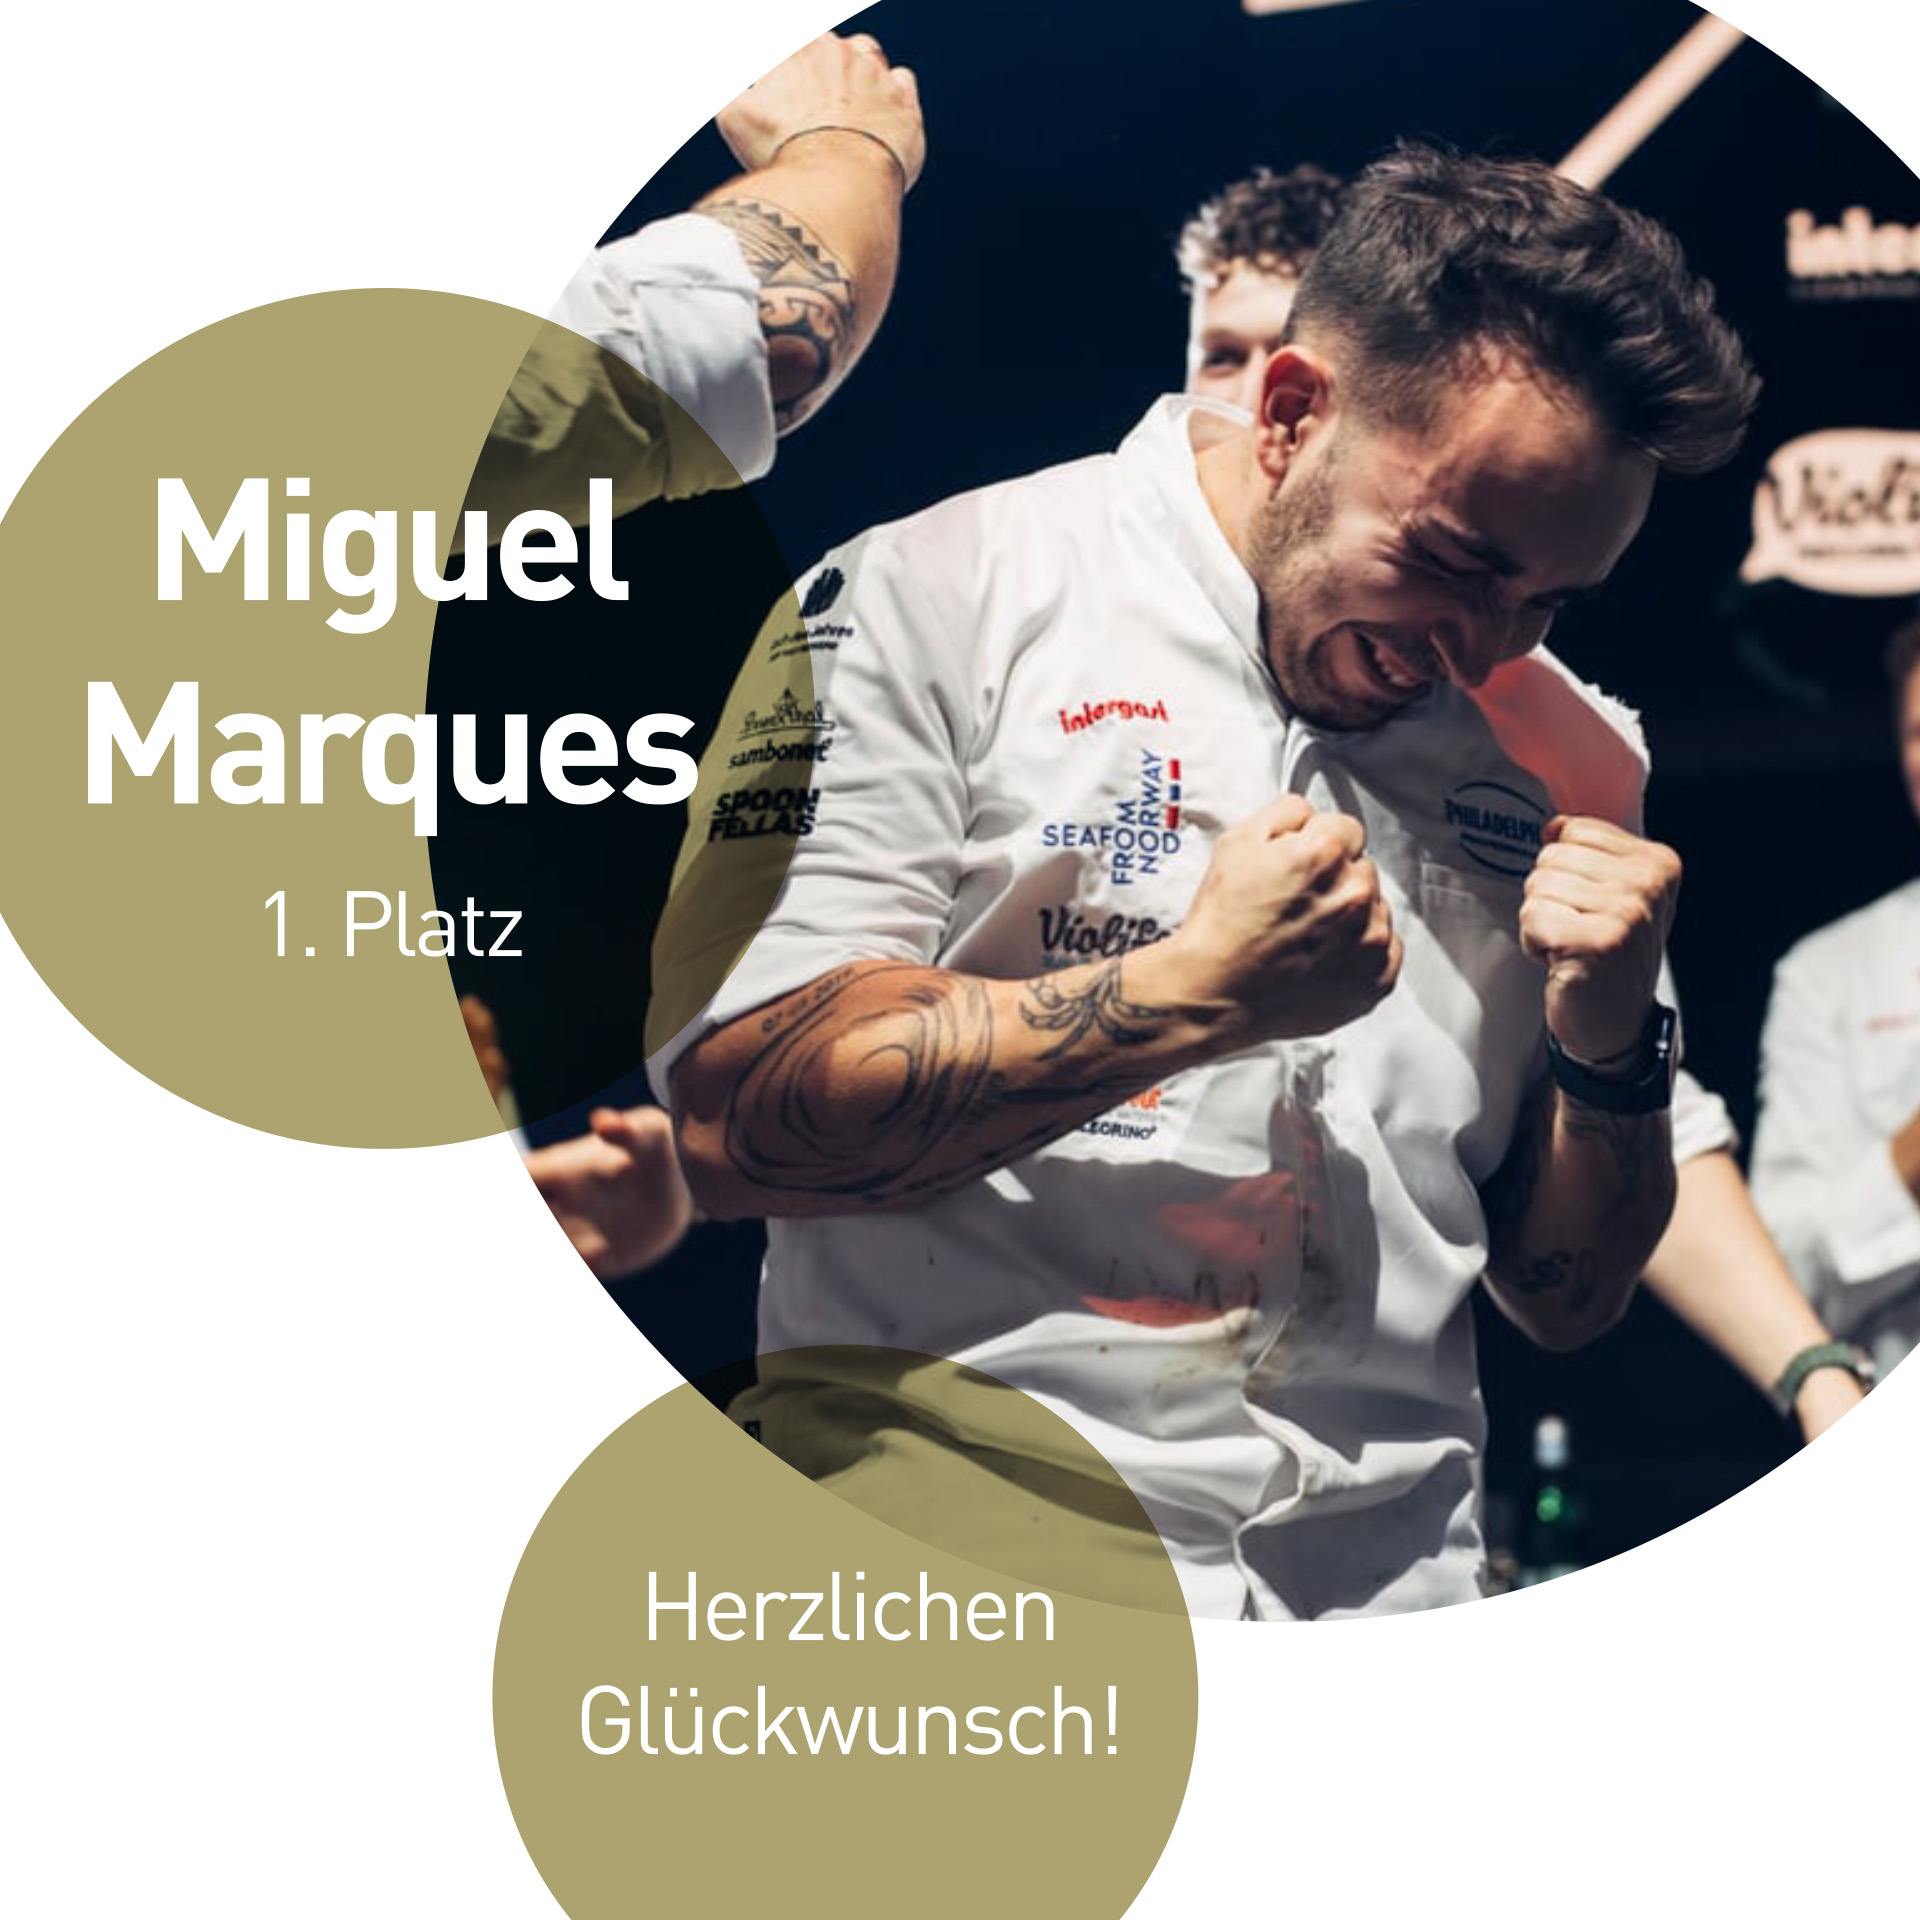 Genuss, Spannung und Sieg für Miguel Marques beim ‘Koch des Jahres’ Event im Kameha Grand, Bonn!